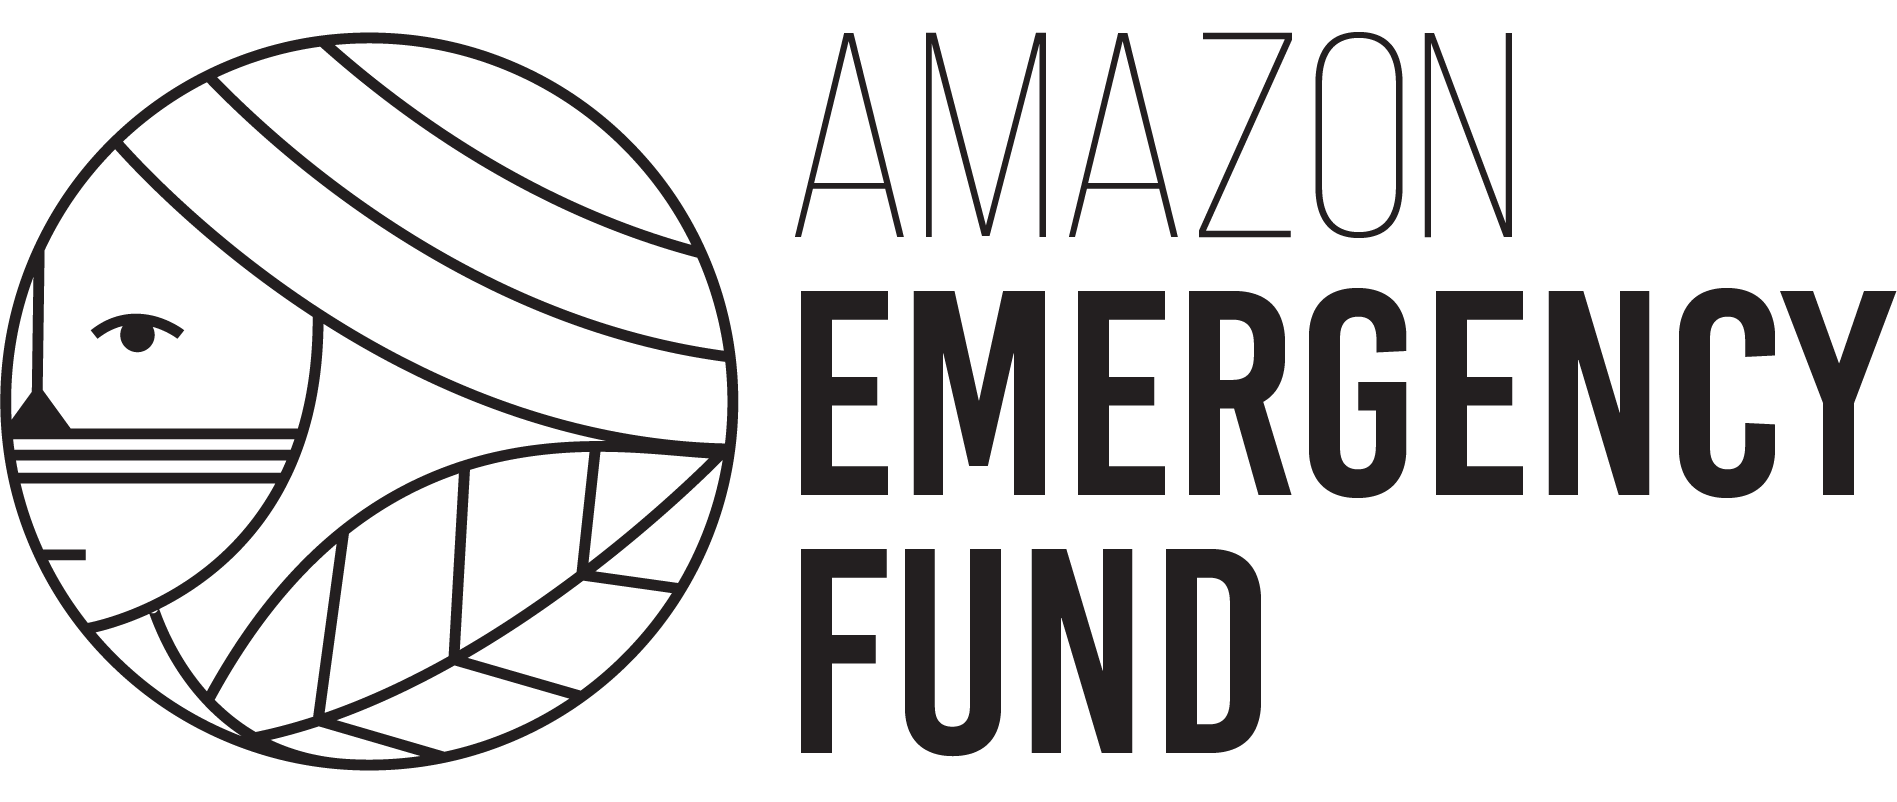 Amazon Emergency Fund